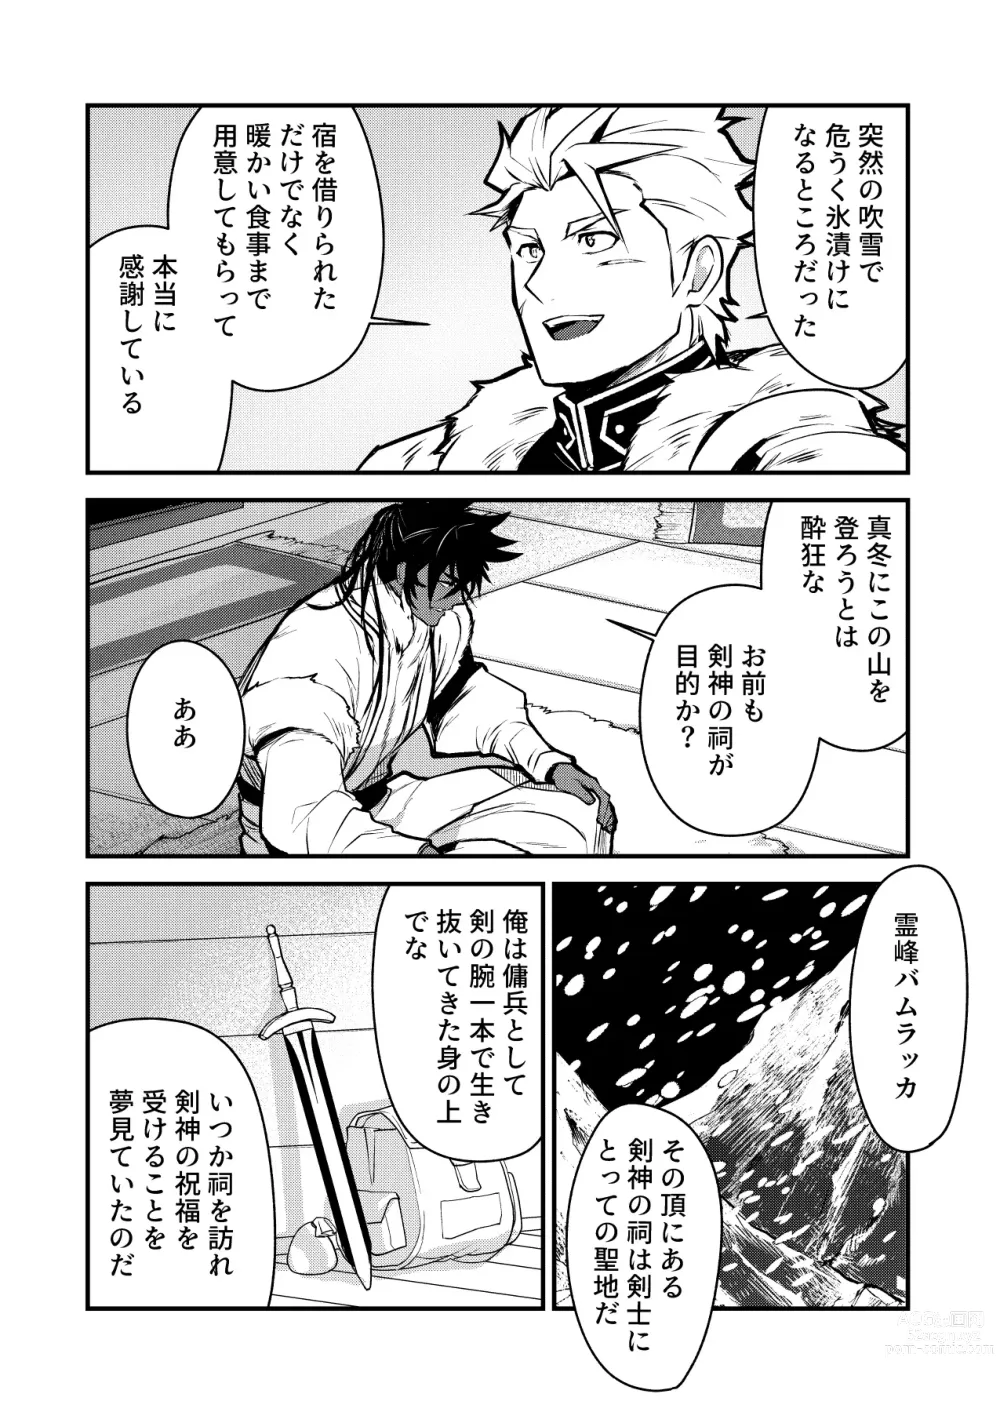 Page 6 of doujinshi Kurotetsu no Yado Seidorei e to Otsu Kenshi